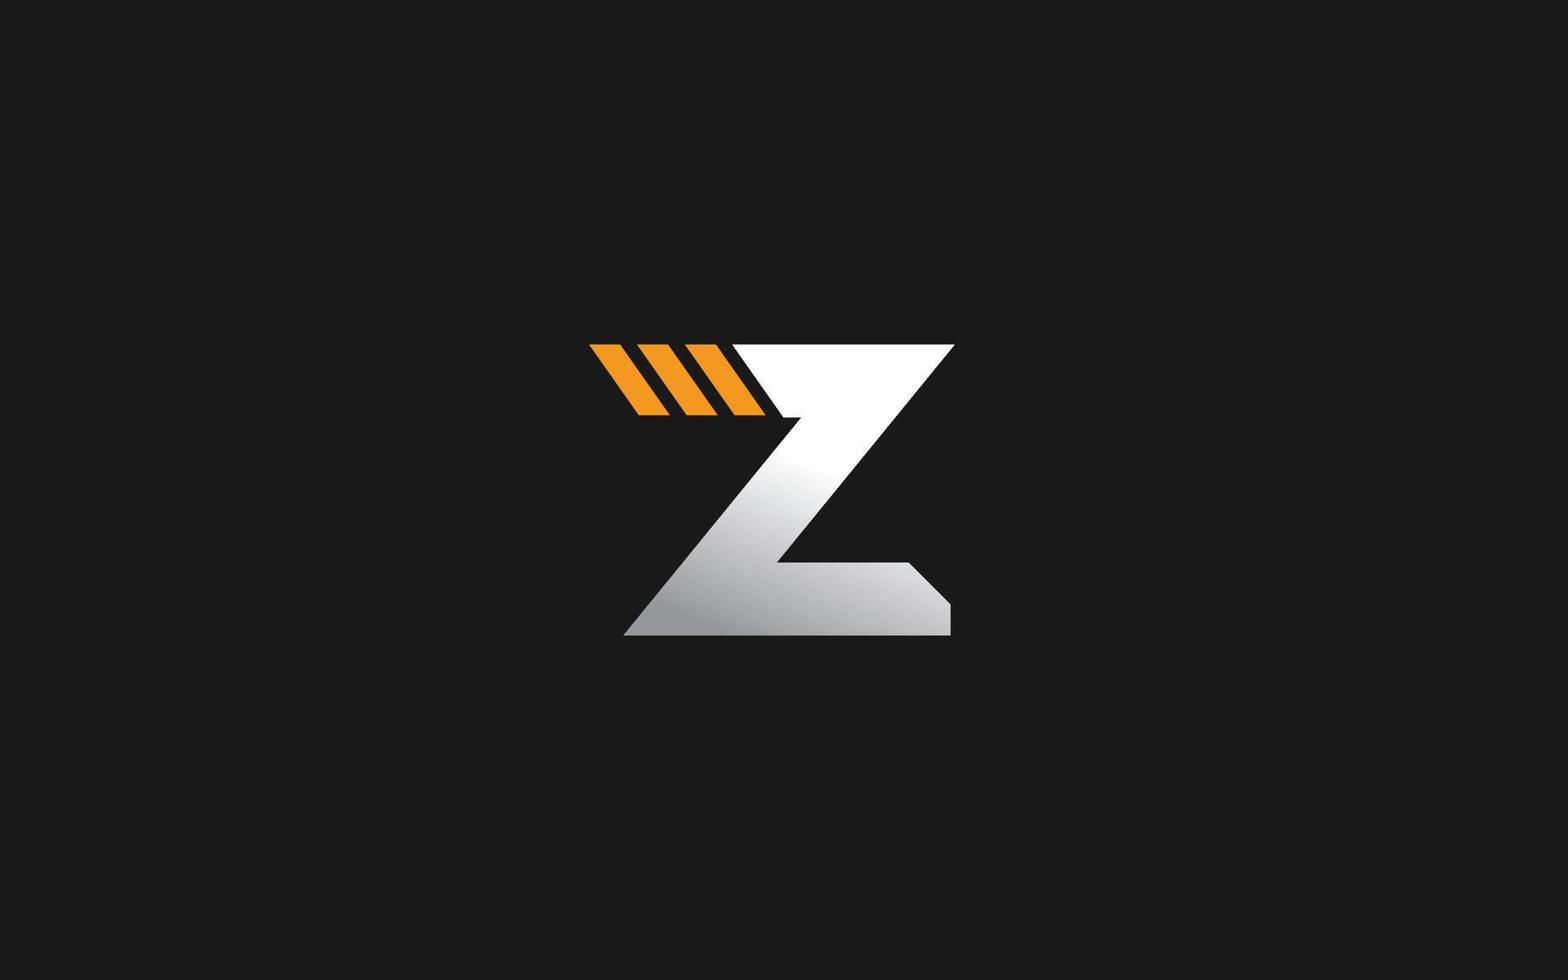 logotipo industrial z para empresa constructora. ilustración de vector de plantilla de equipo pesado para su marca.